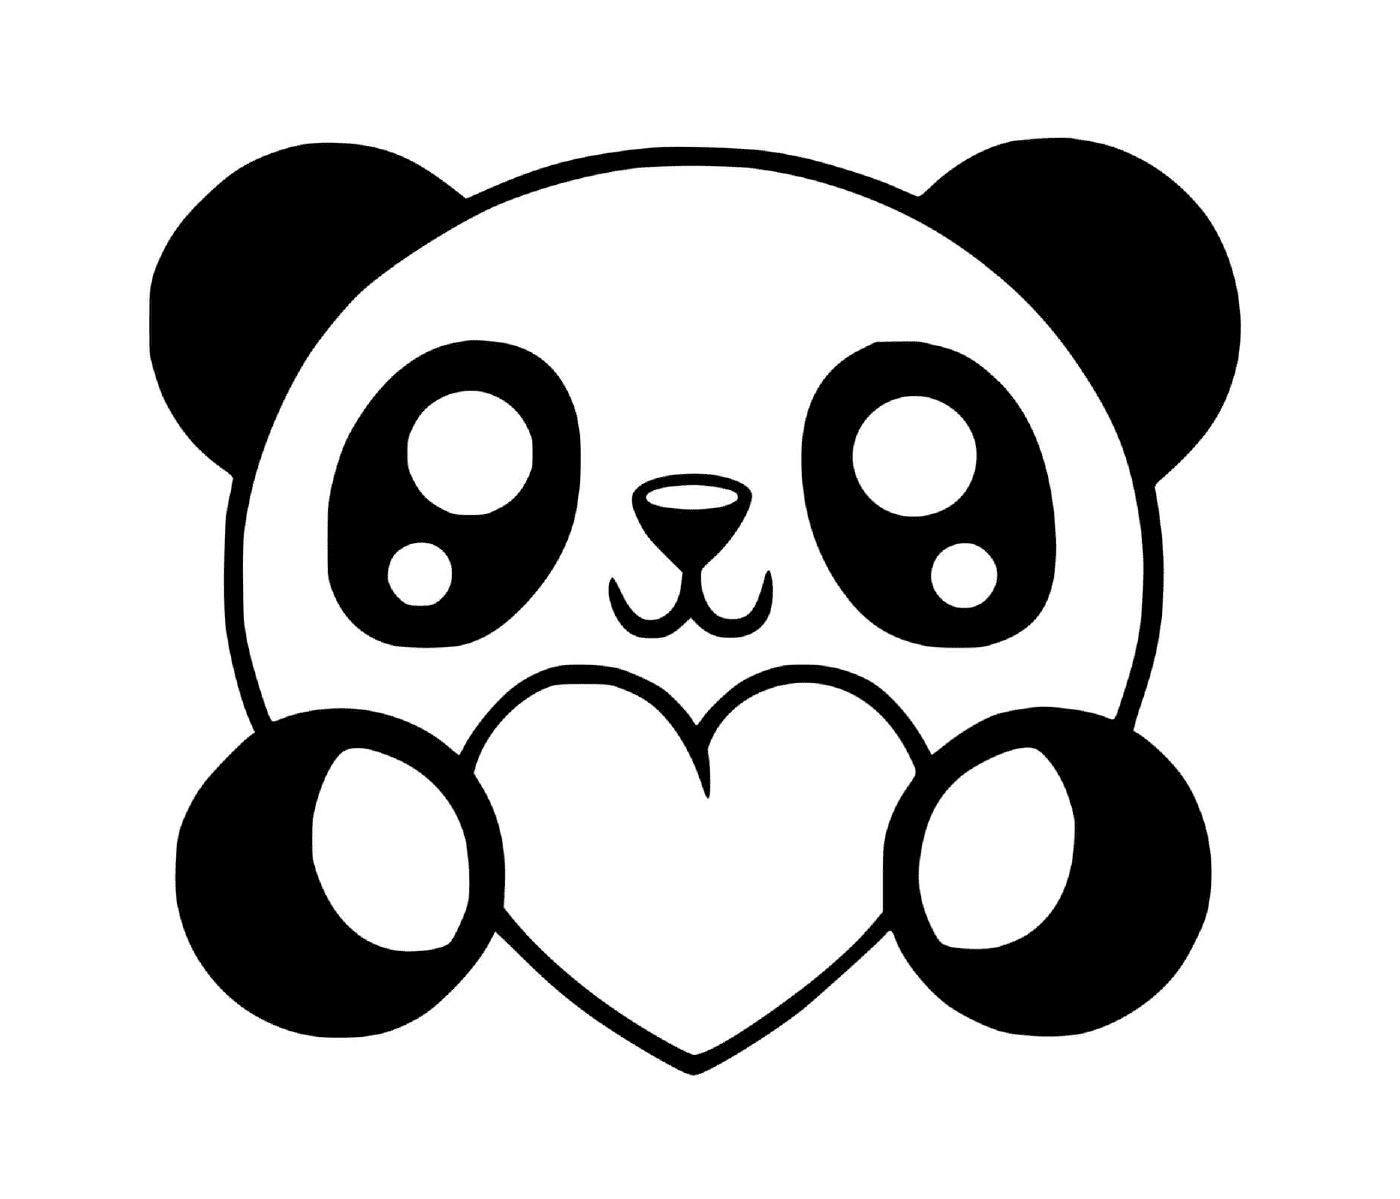  एक पांडा हृदय धारण करता है 